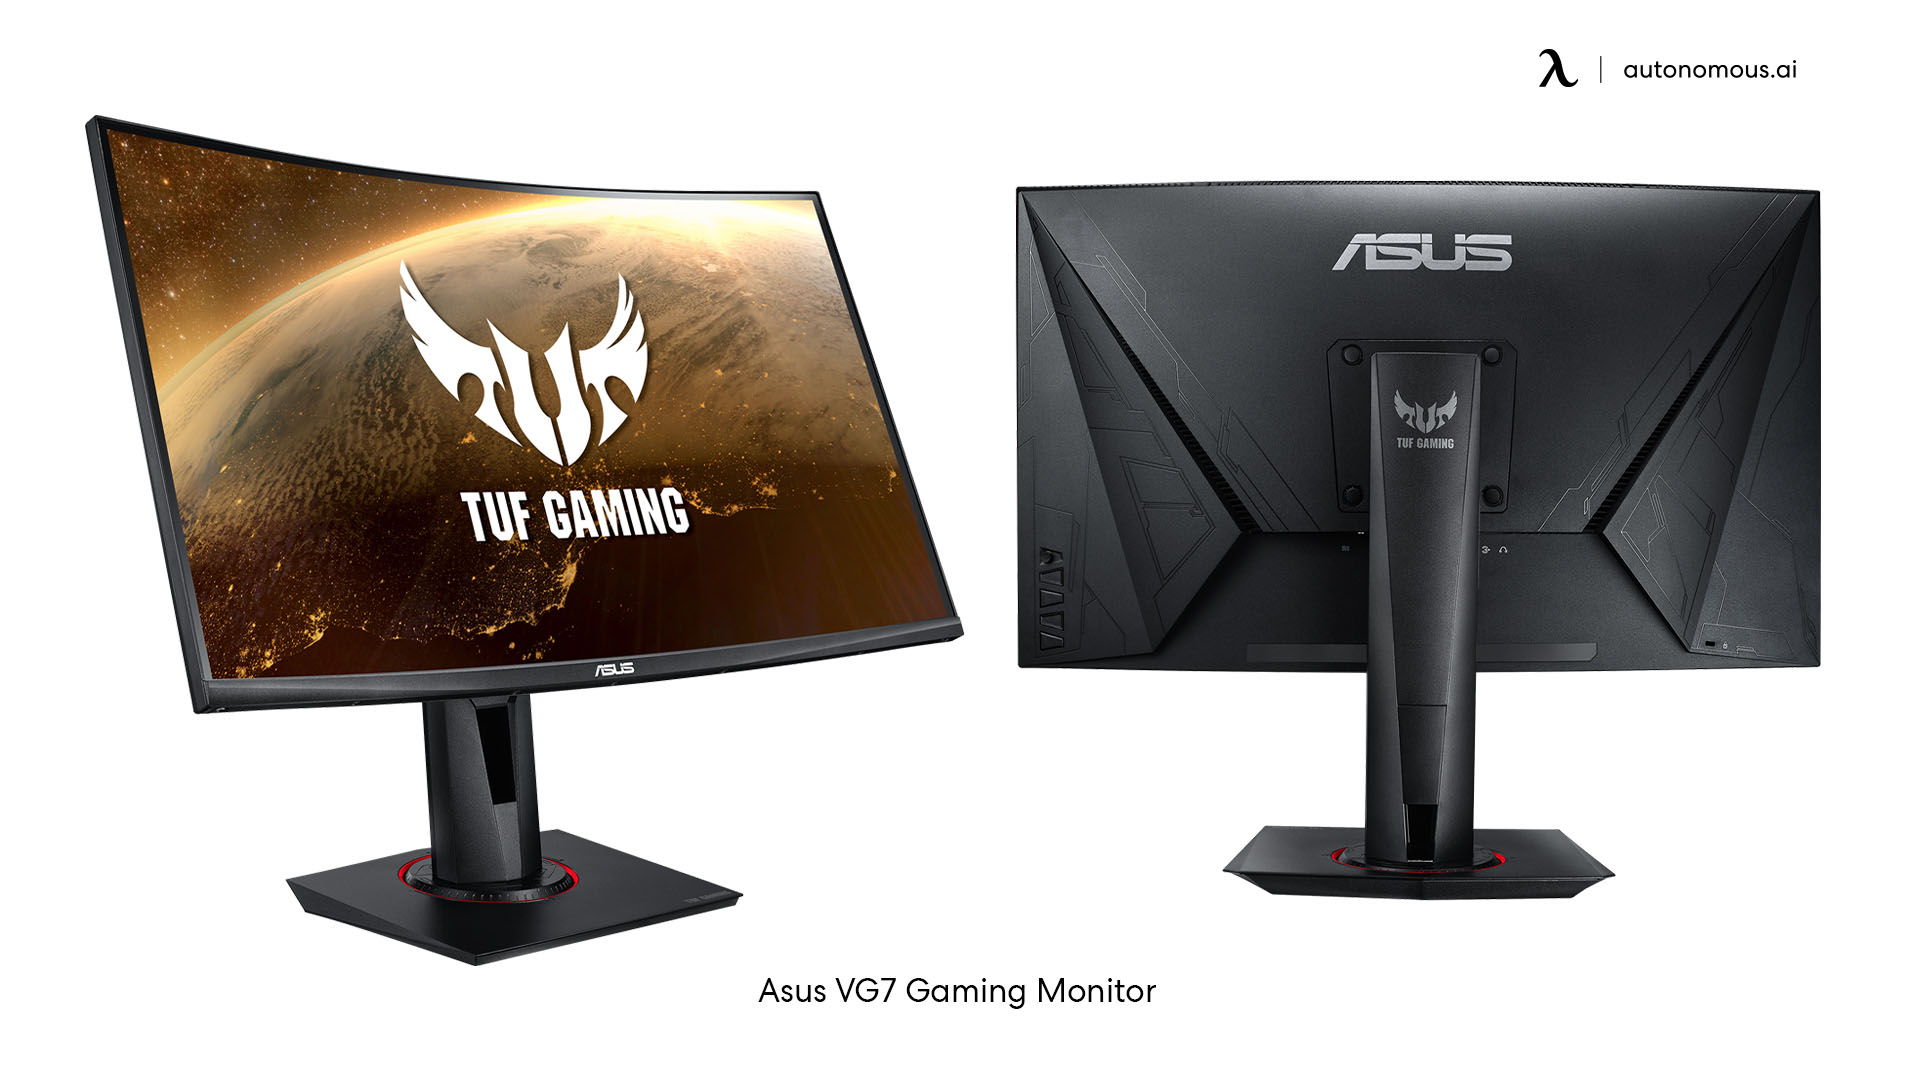 Asus VG7 Gaming Monitor